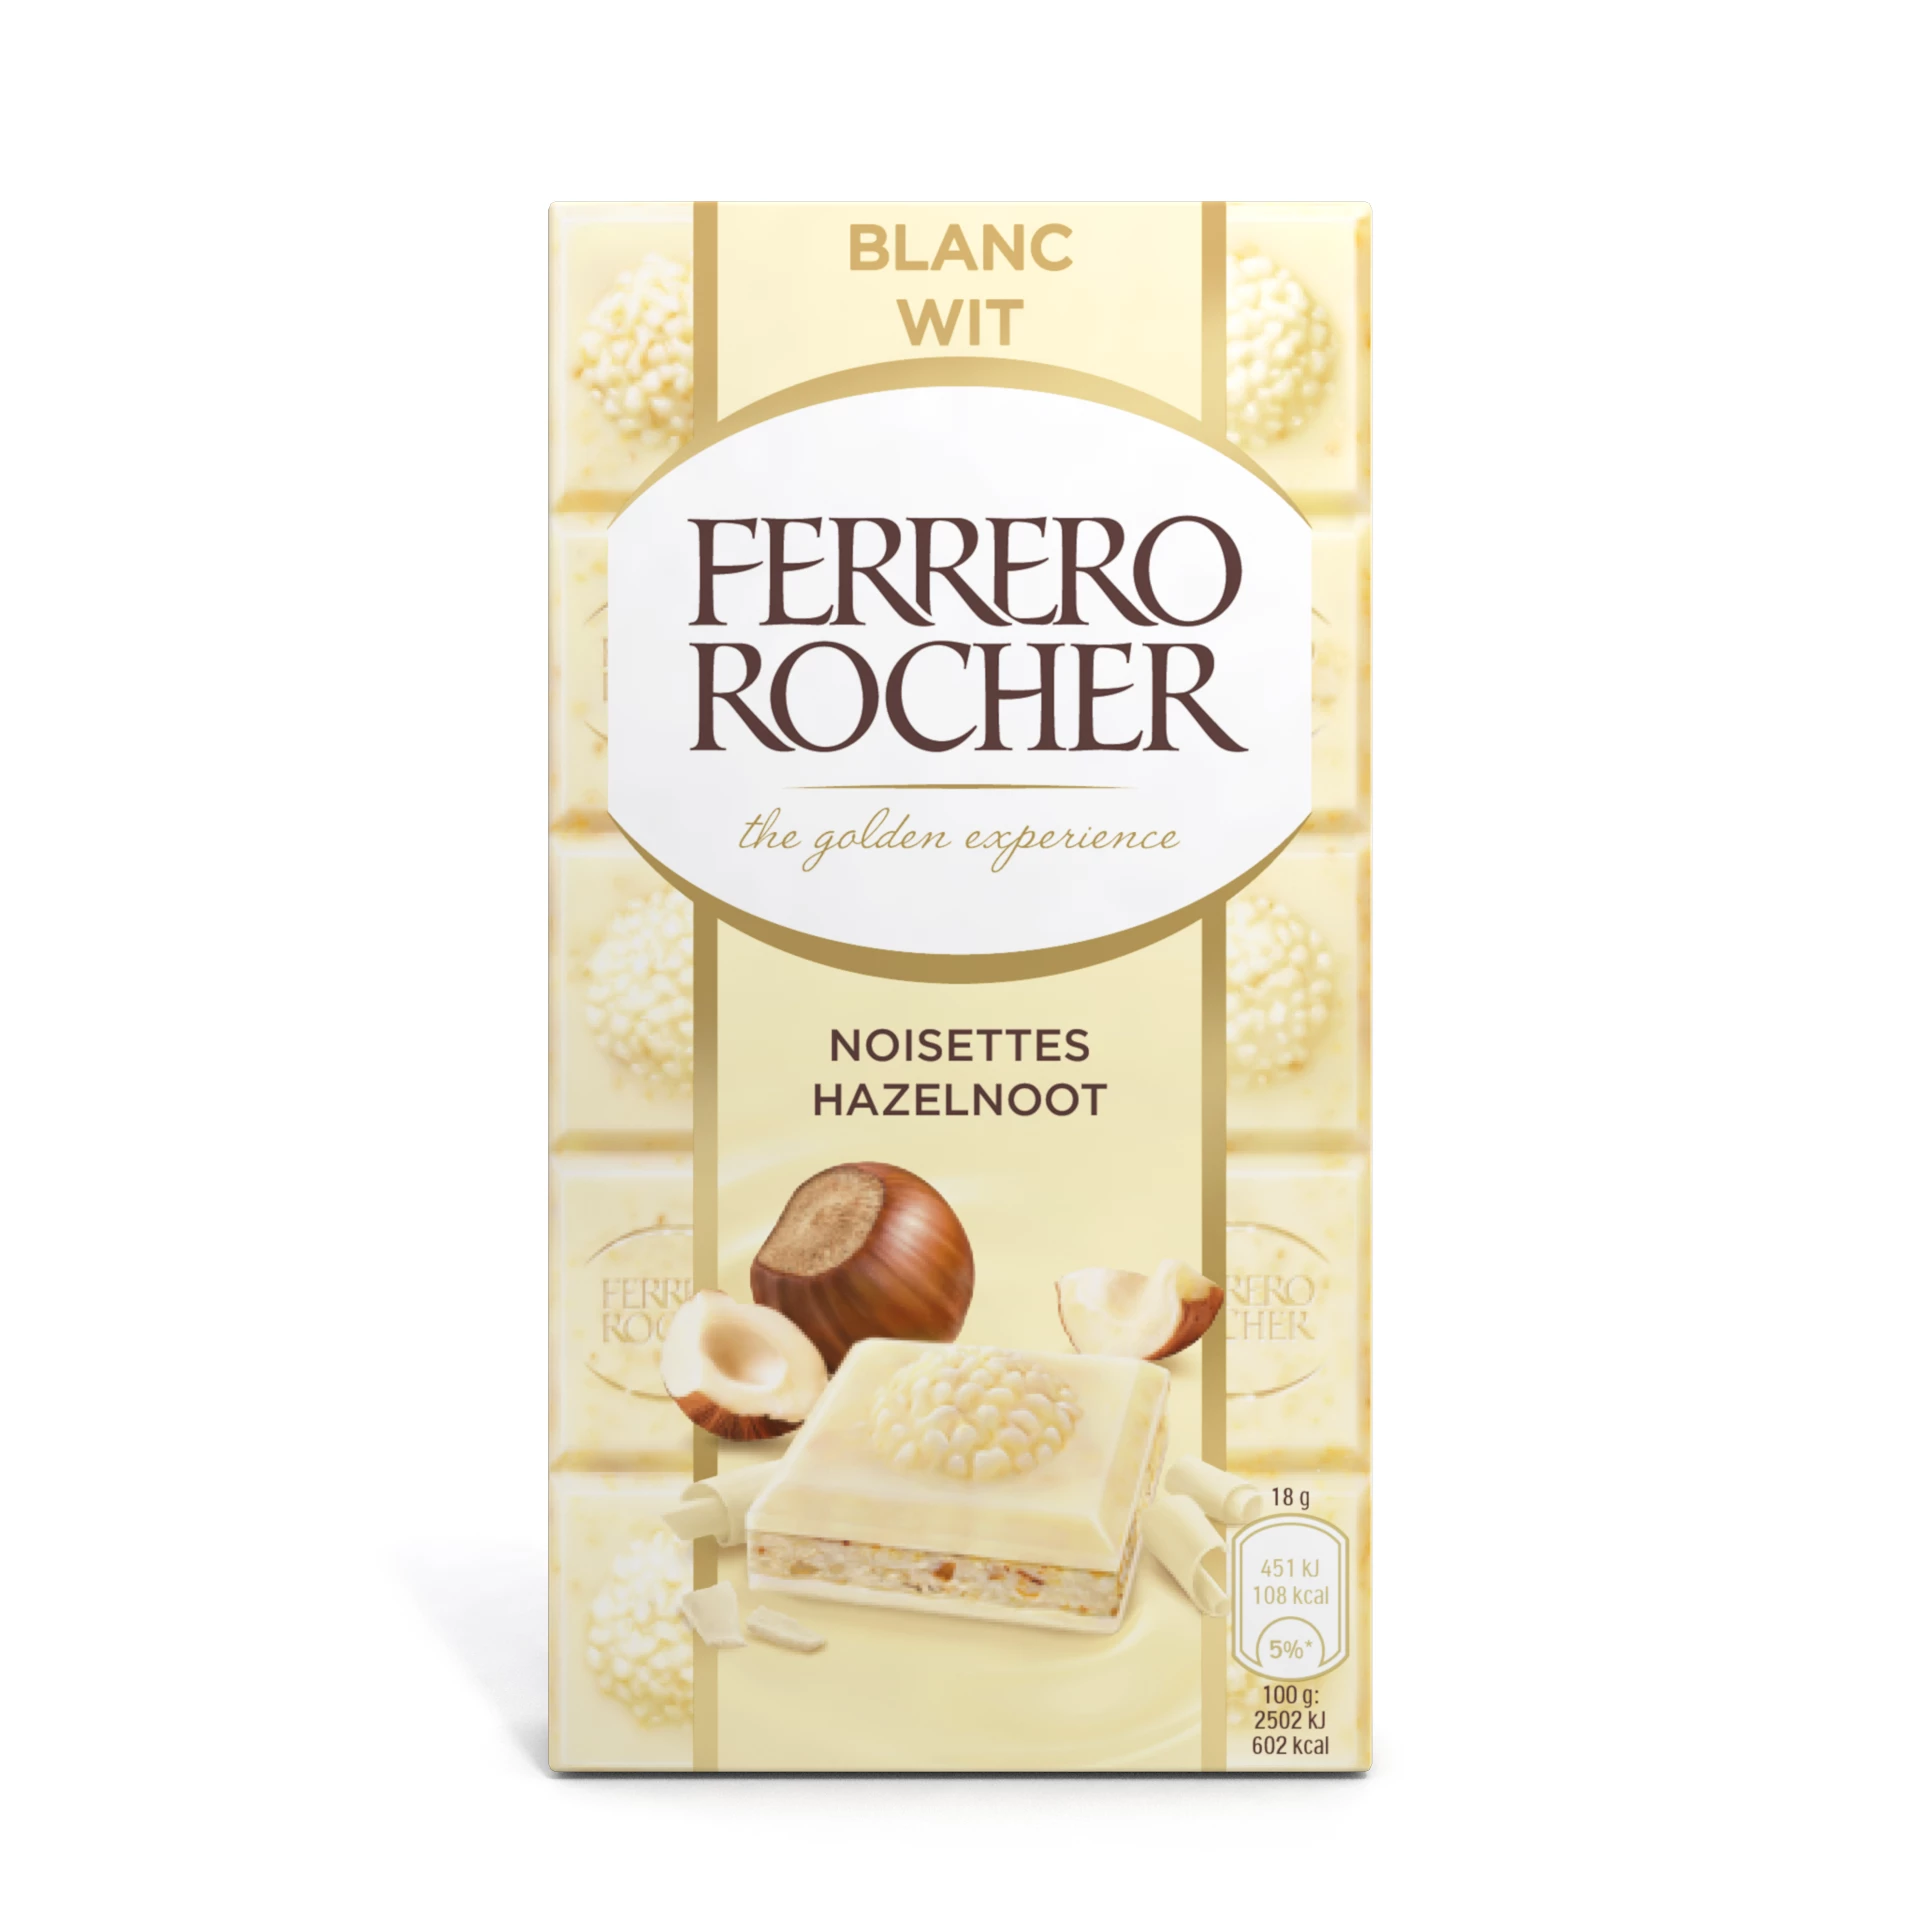 Ferrero Rocher Nocciola Bianca, 90g - FERRERO